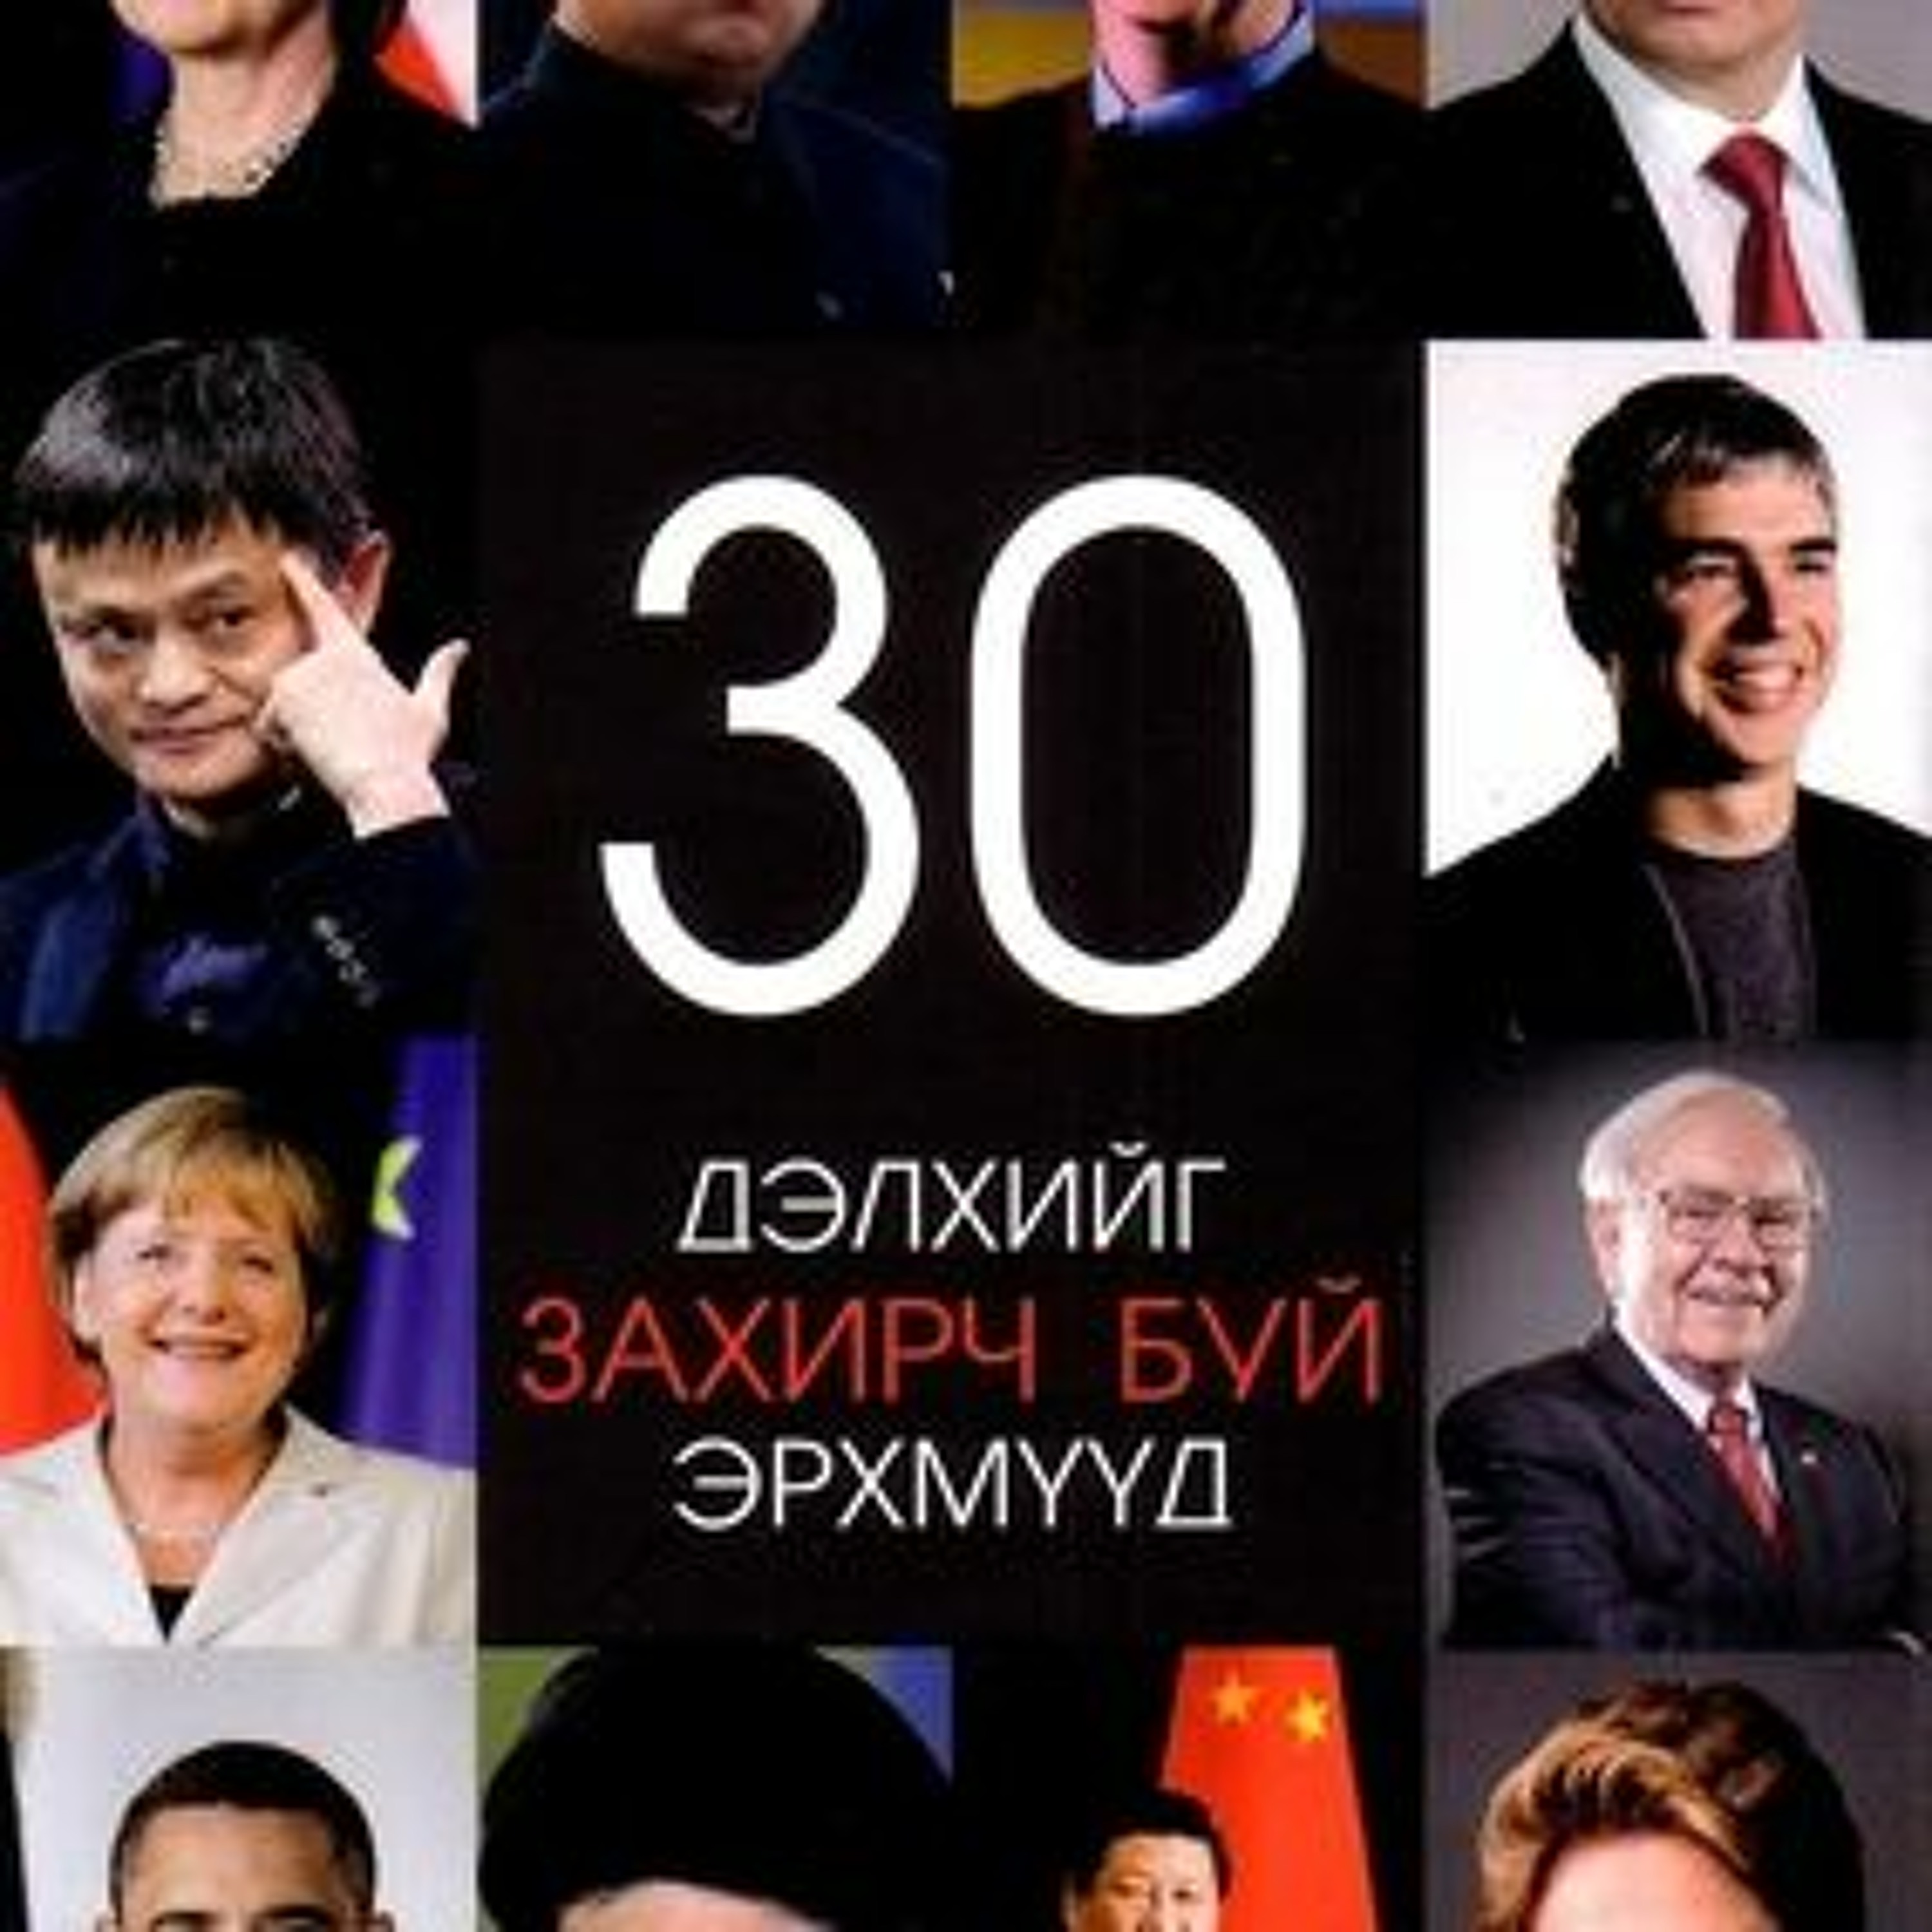 ”Дэлхийг захирч буй 30 эрхмүүд” - Д.Гэрэлт-Од | Тайвантай Хамт Номын Хэлэлцүүлэг #5